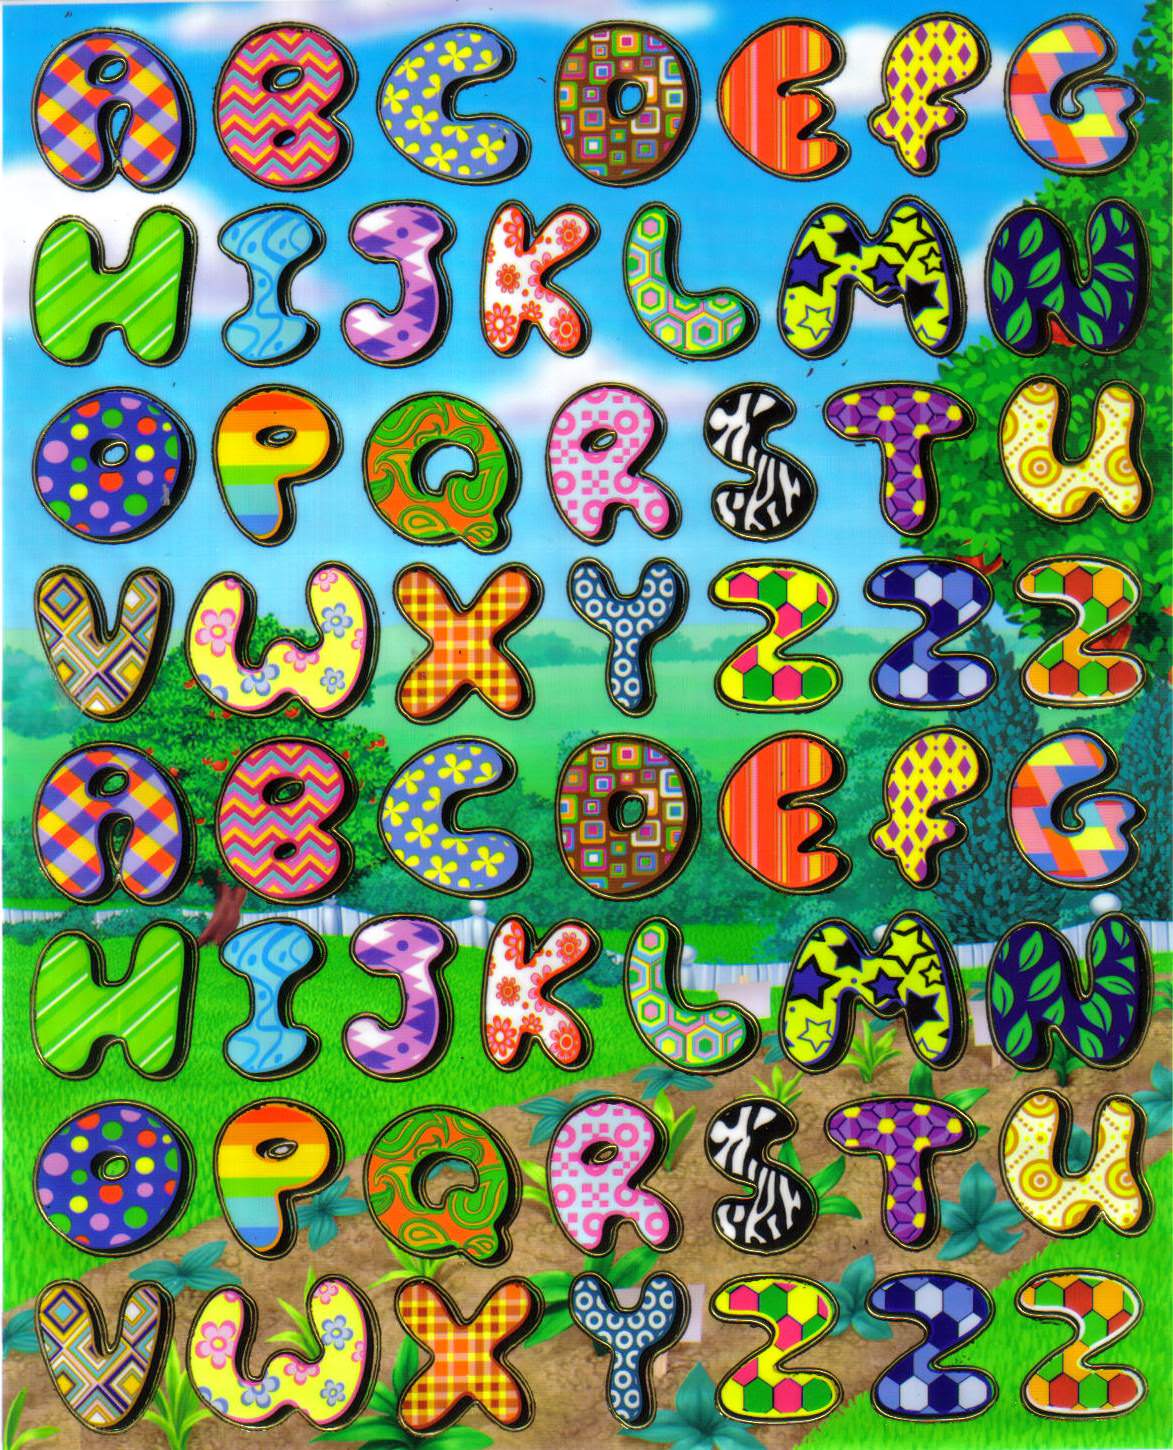 alphabet lettres originales coloree gommette autocollant sticker PVC souple mou enfant pedagogique BLF1108